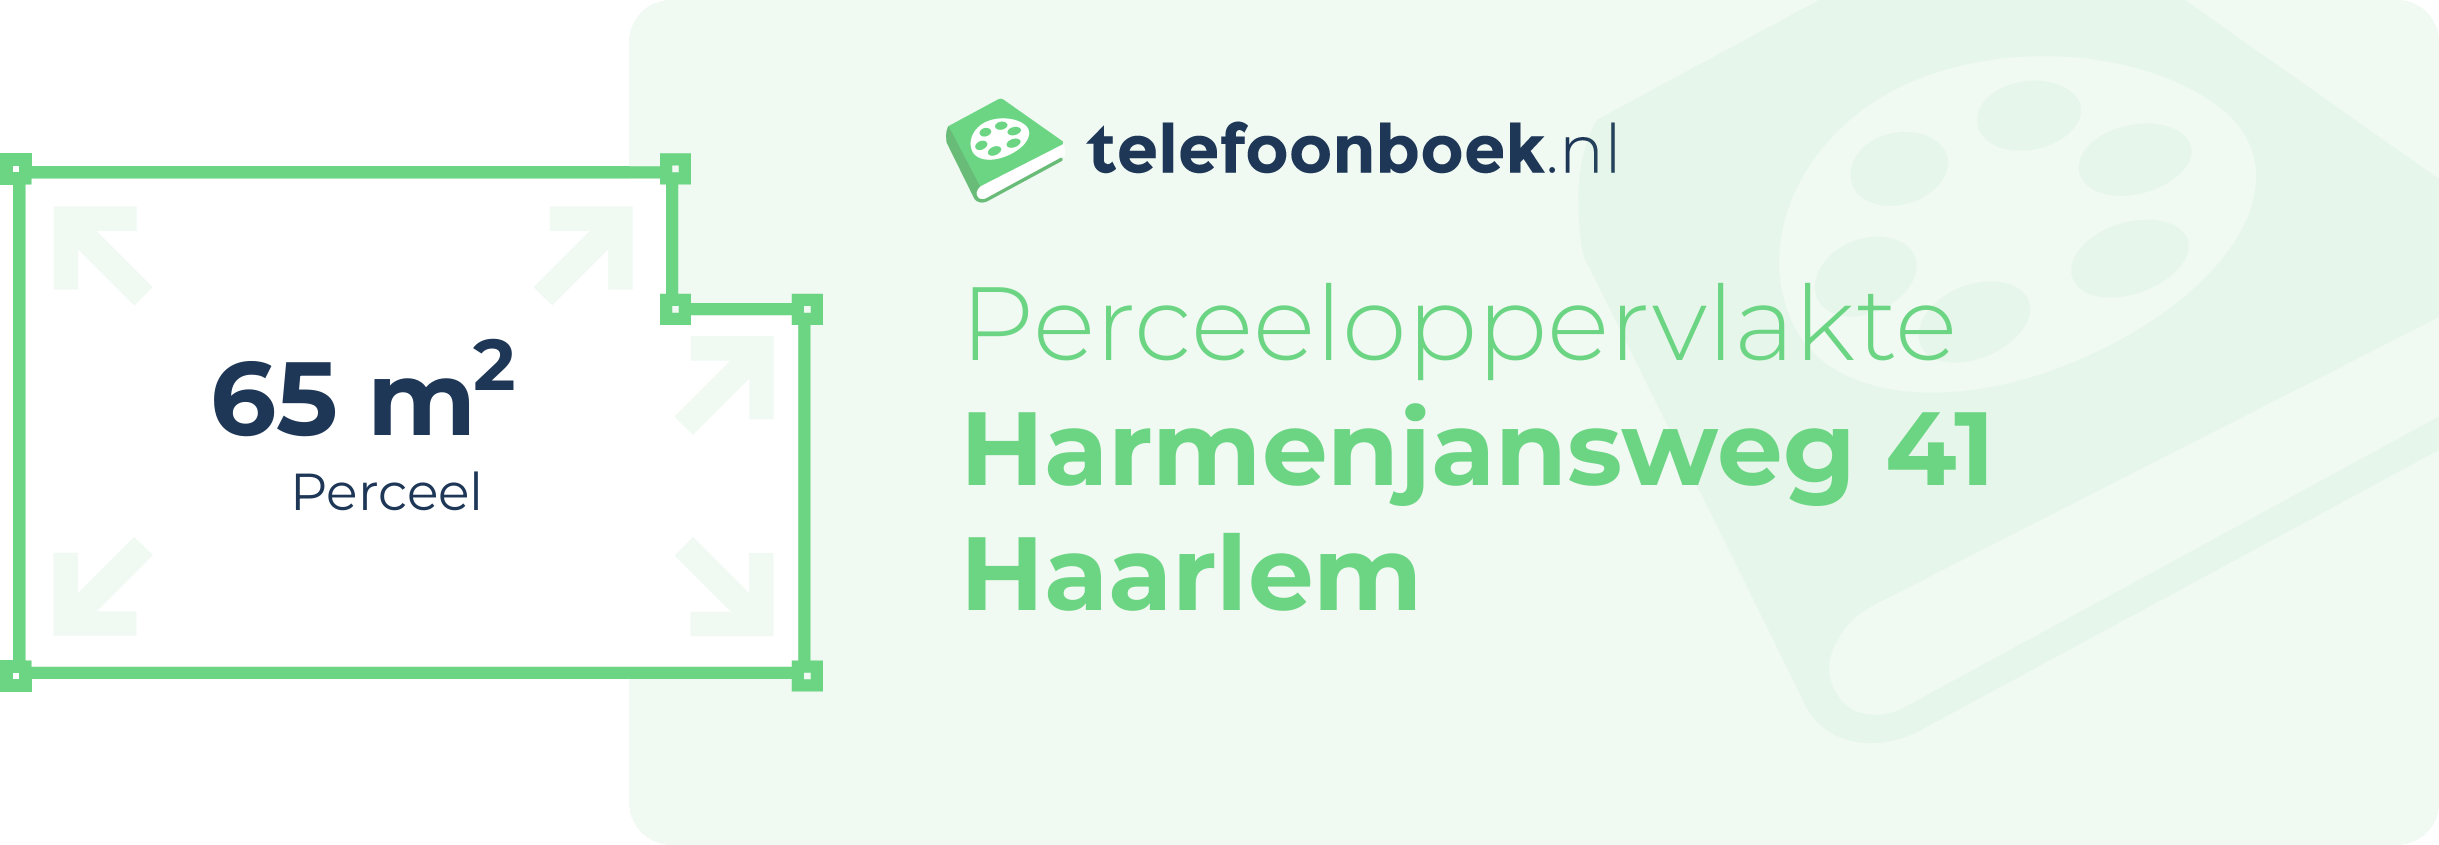 Perceeloppervlakte Harmenjansweg 41 Haarlem